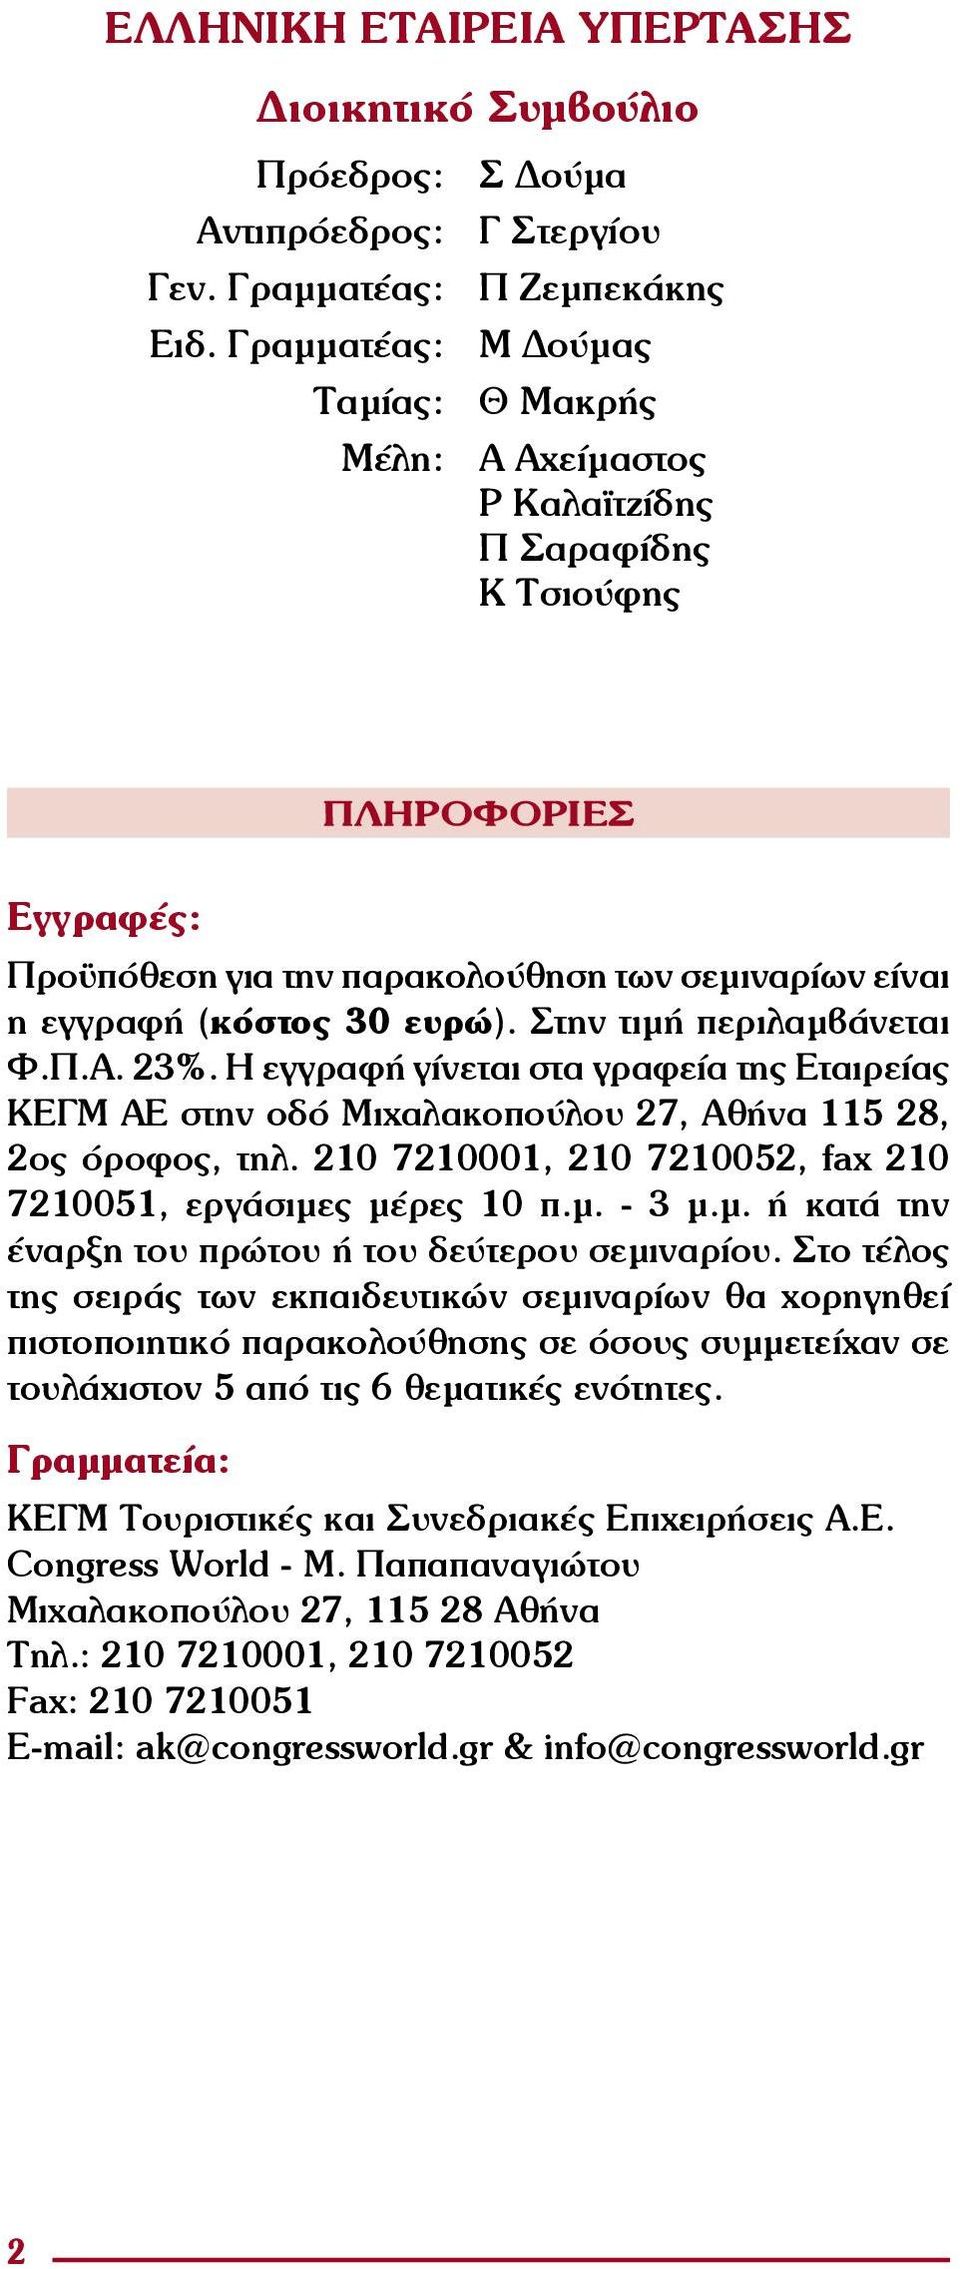 Στην τιμή περιλαμβάνεται Φ.Π.Α. 23%. Η εγγραφή γίνεται στα γραφεία της Εταιρείας ΚΕΓΜ ΑΕ στην οδό Μιχαλακοπούλου 27, Αθήνα 115 28, 2ος όροφος, τηλ.